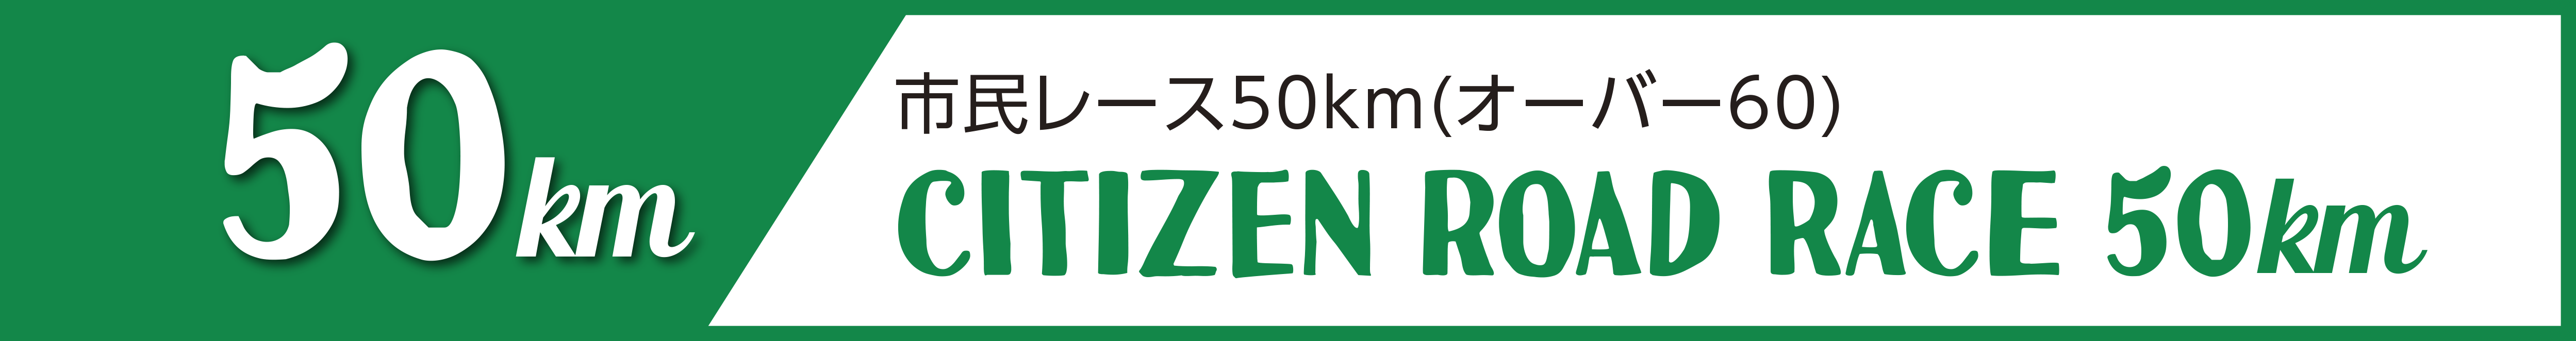 市民レース50km(オーバー60)